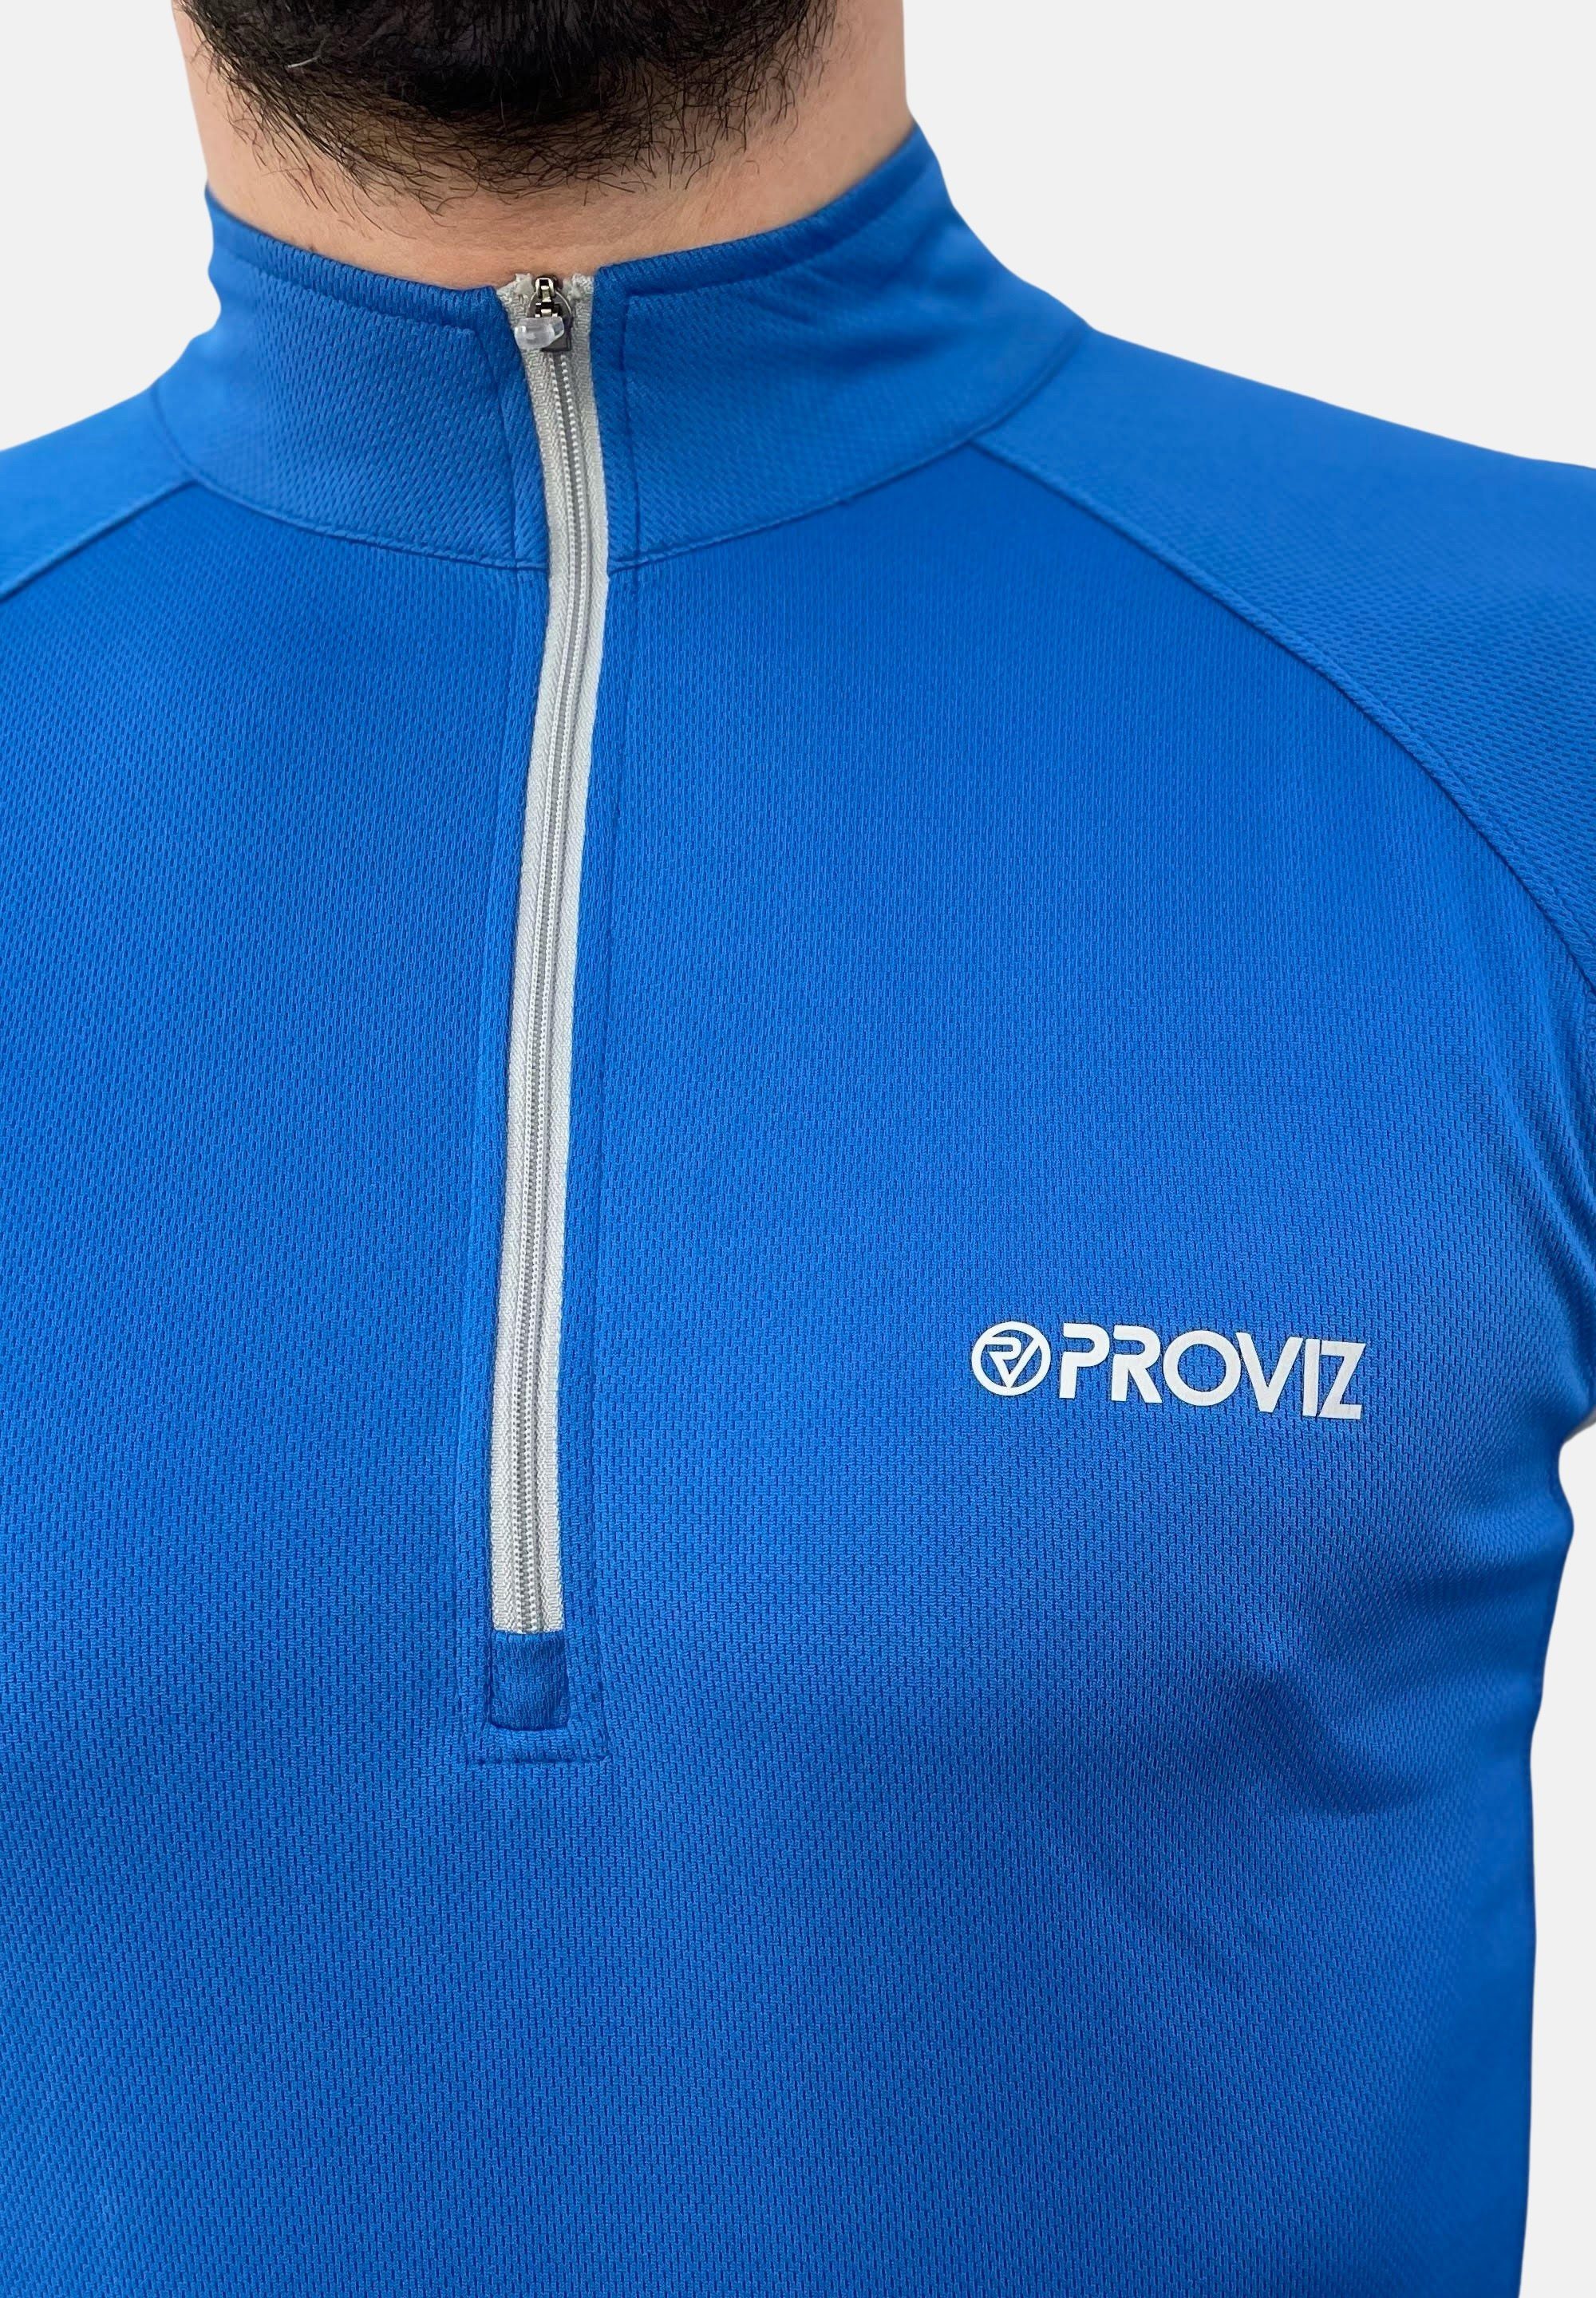 feuchtigkeitsabsorbierend, reflektierend blue ProViz Klassisch Laufshirt Ultraleicht,